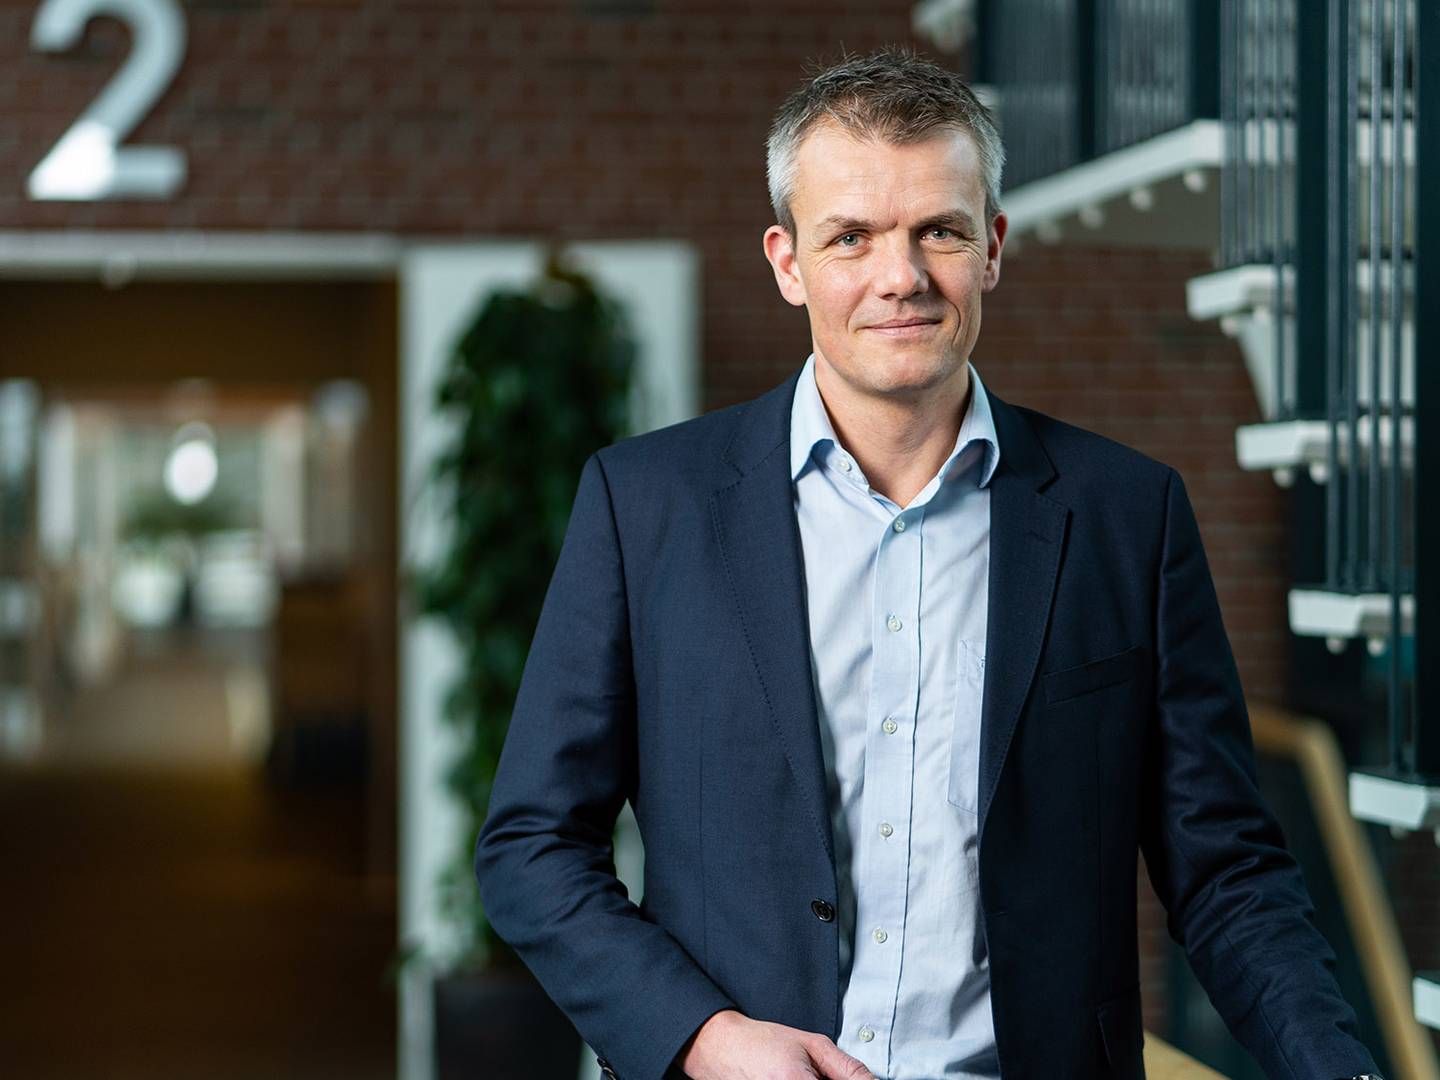 Thomas Hold Pedersen, CEO of NMD Pharma | Photo: NMD Pharma / PR